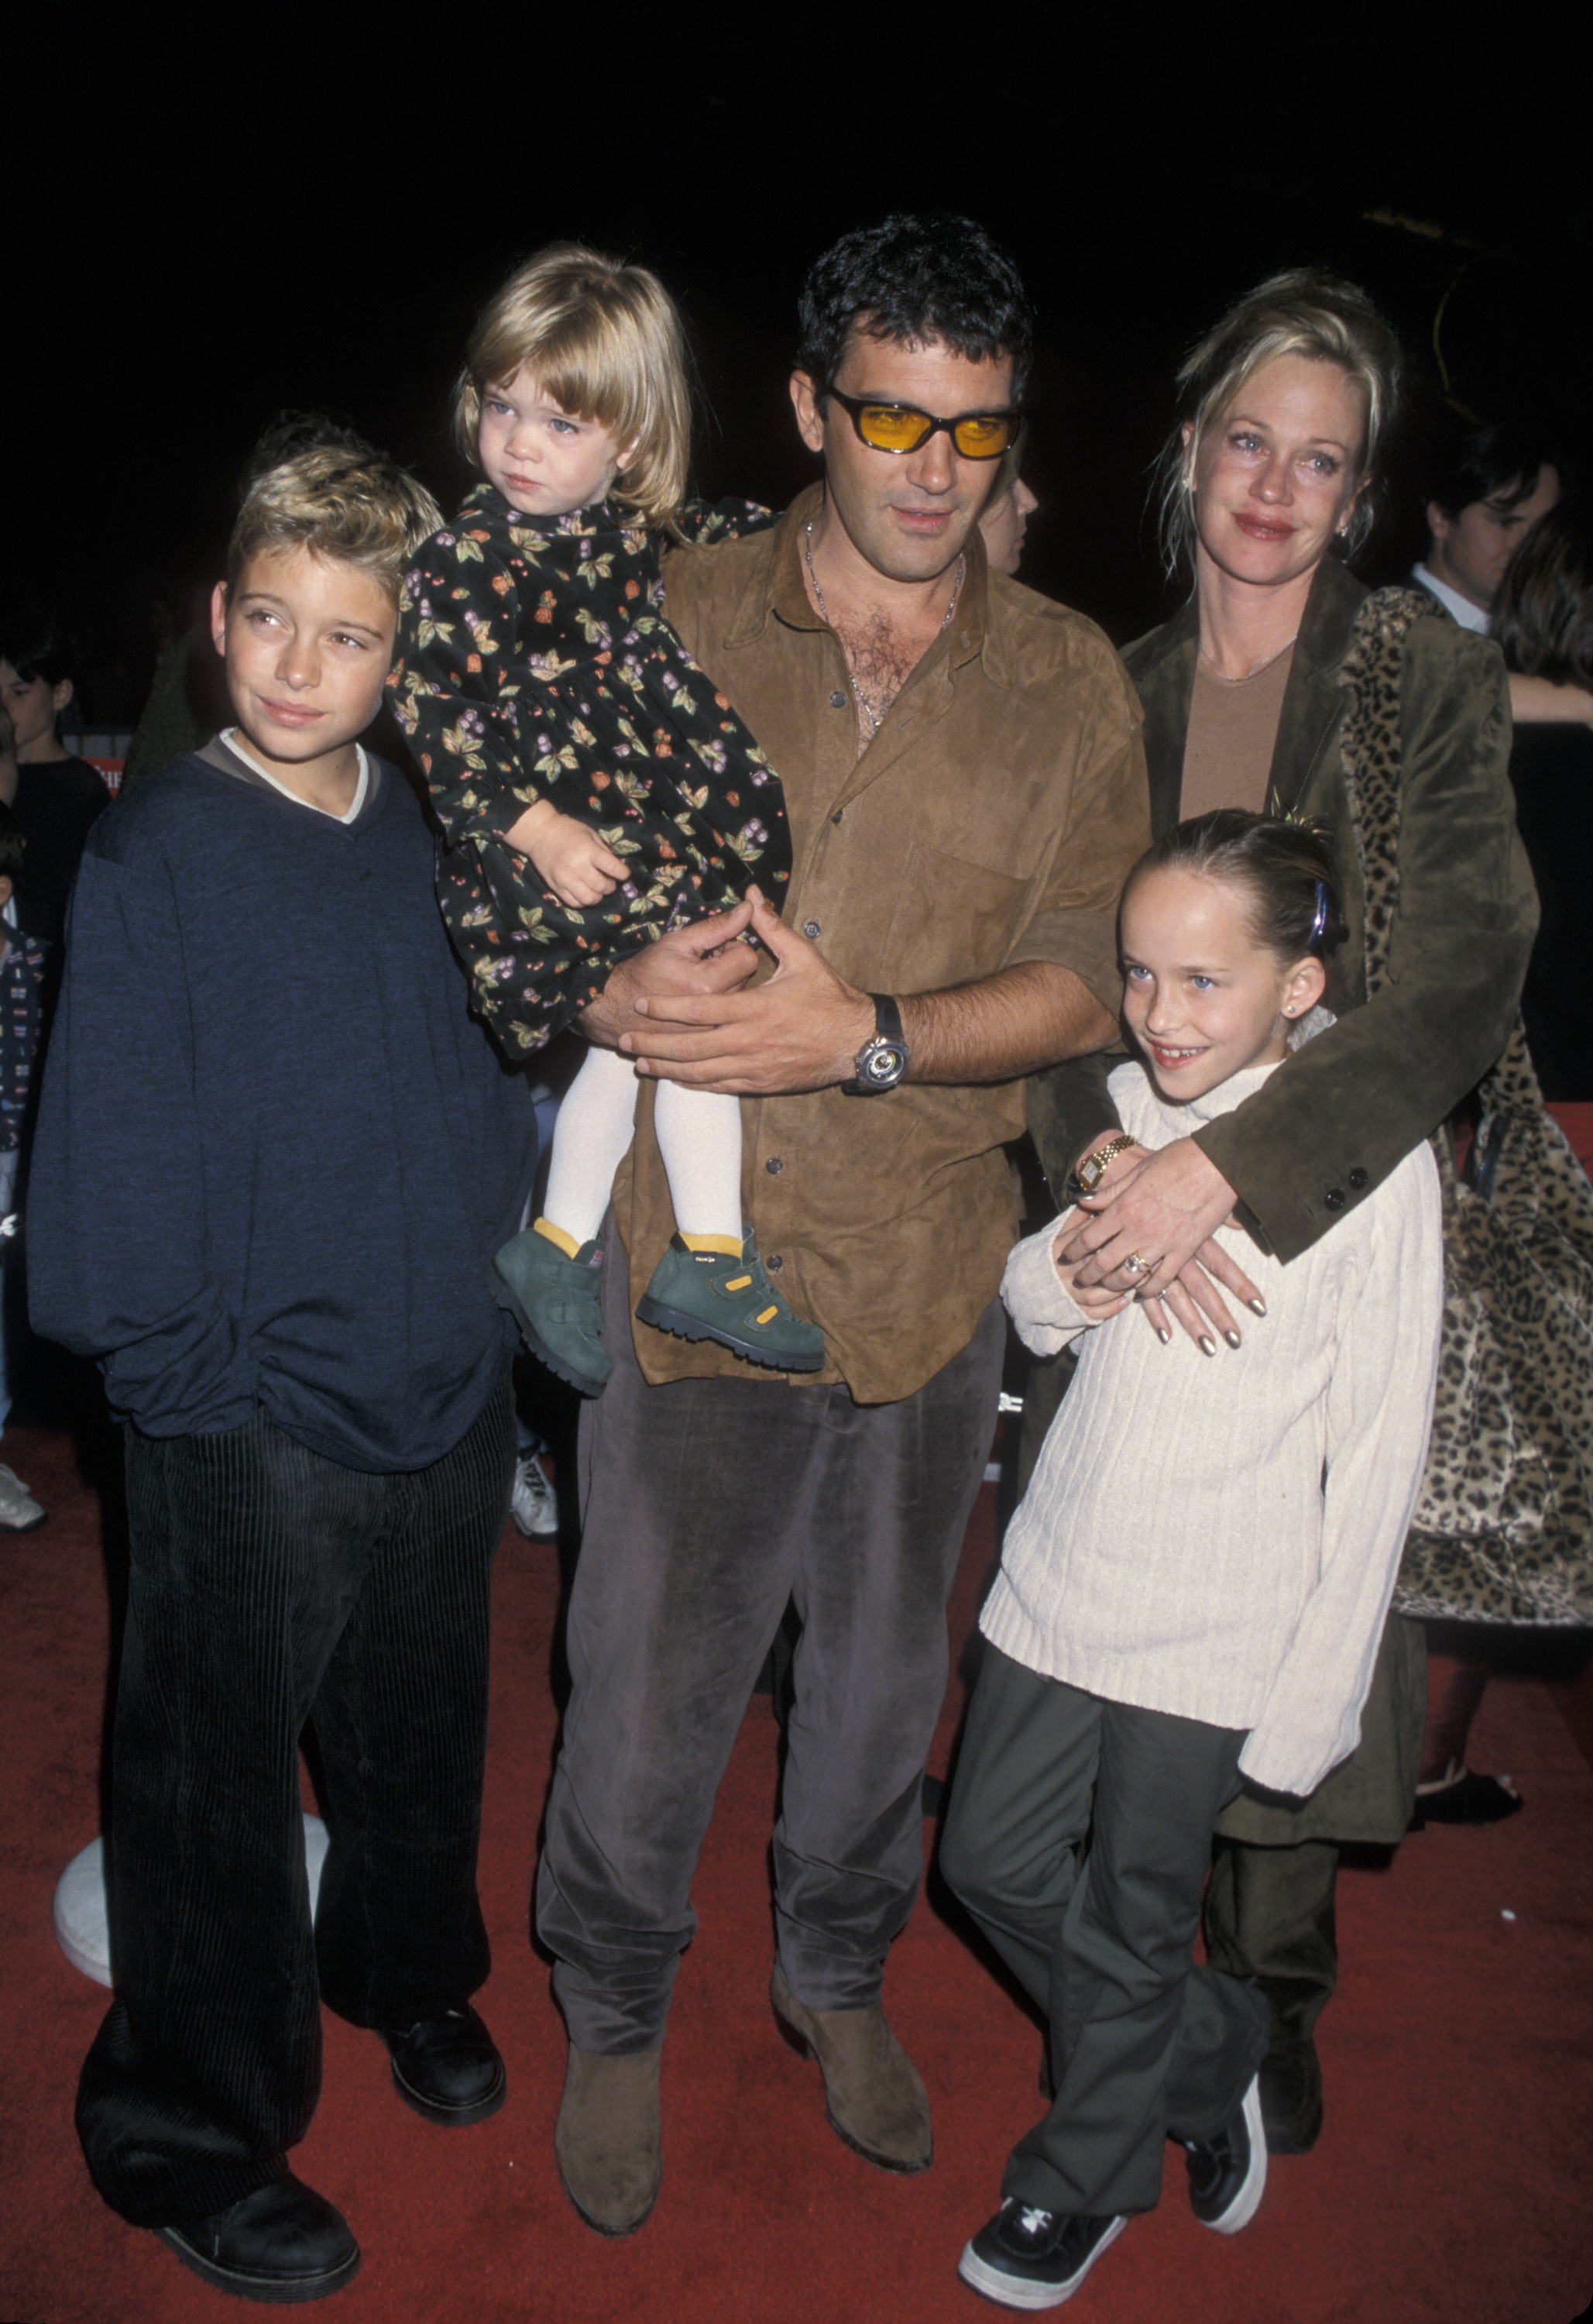 Antonio Banderas und Melanie Griffith mit ihren Kindern Alexander Bauer, Stella Banderas und Dakota Johnson in Los Angeles im Jahr 1998 | Quelle: Getty Images